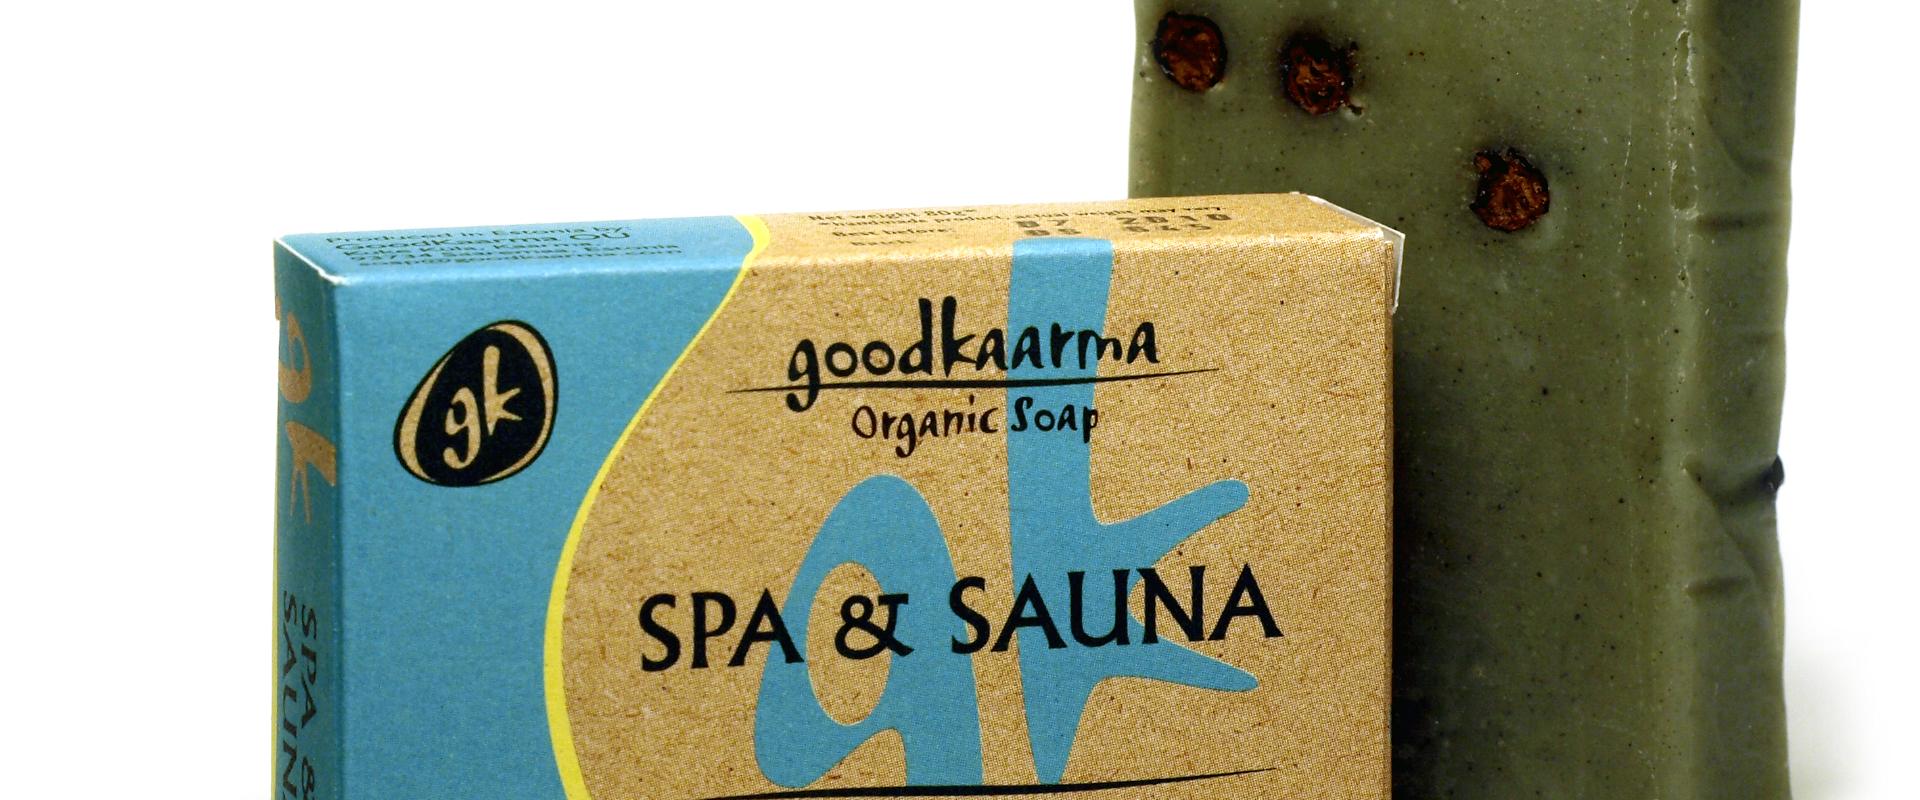 Geheimnisse der Seifenherstellung nach dem Kaltverfahren in der Seifenstube GoodKarma auf der Insel Saaremaa